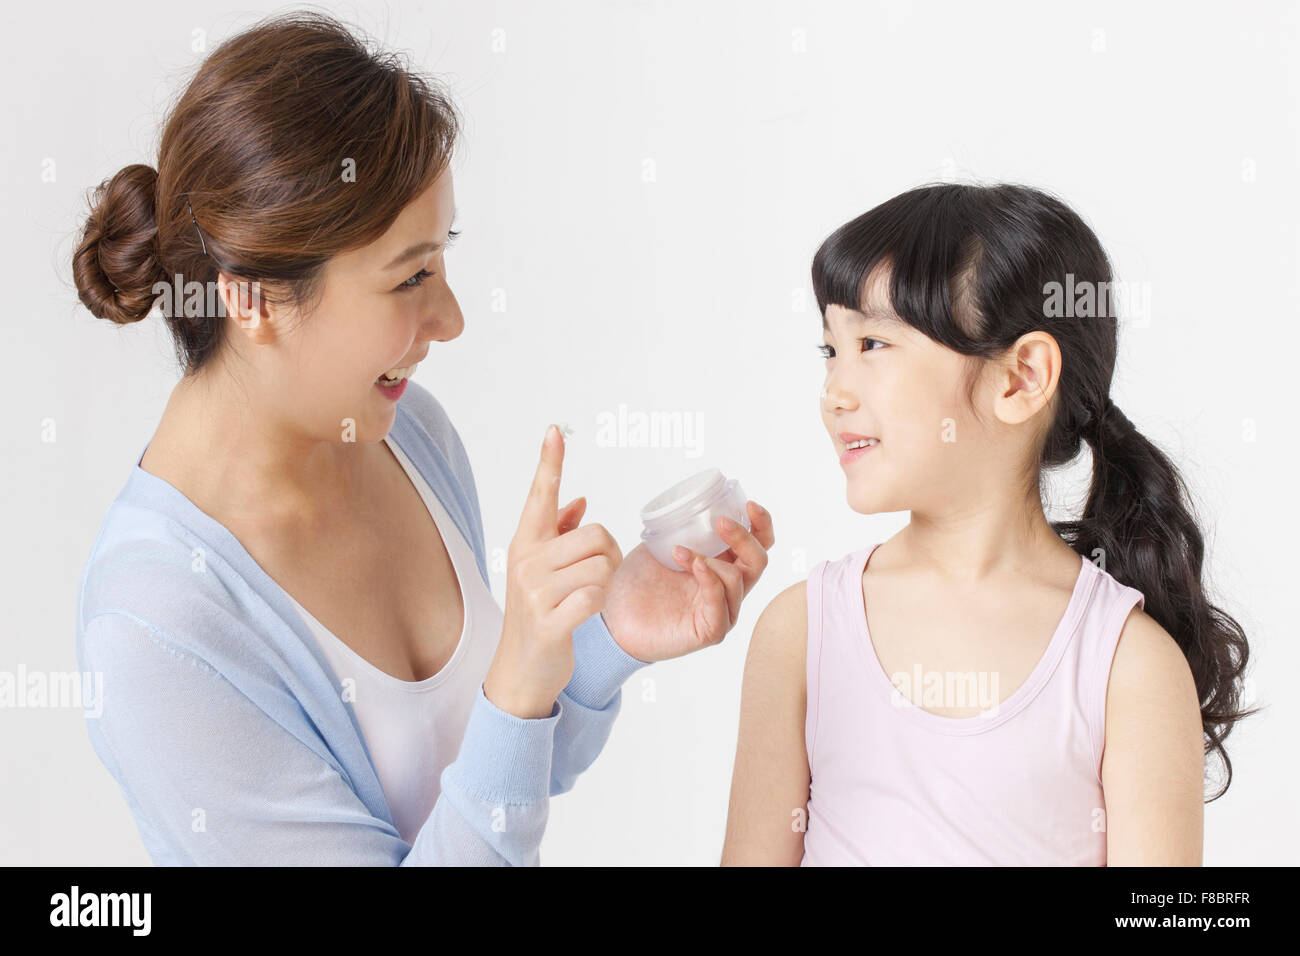 Madre sosteniendo una crema facial para aplicar en la cara de su hija tanto mirando el uno al otro con una sonrisa Foto de stock